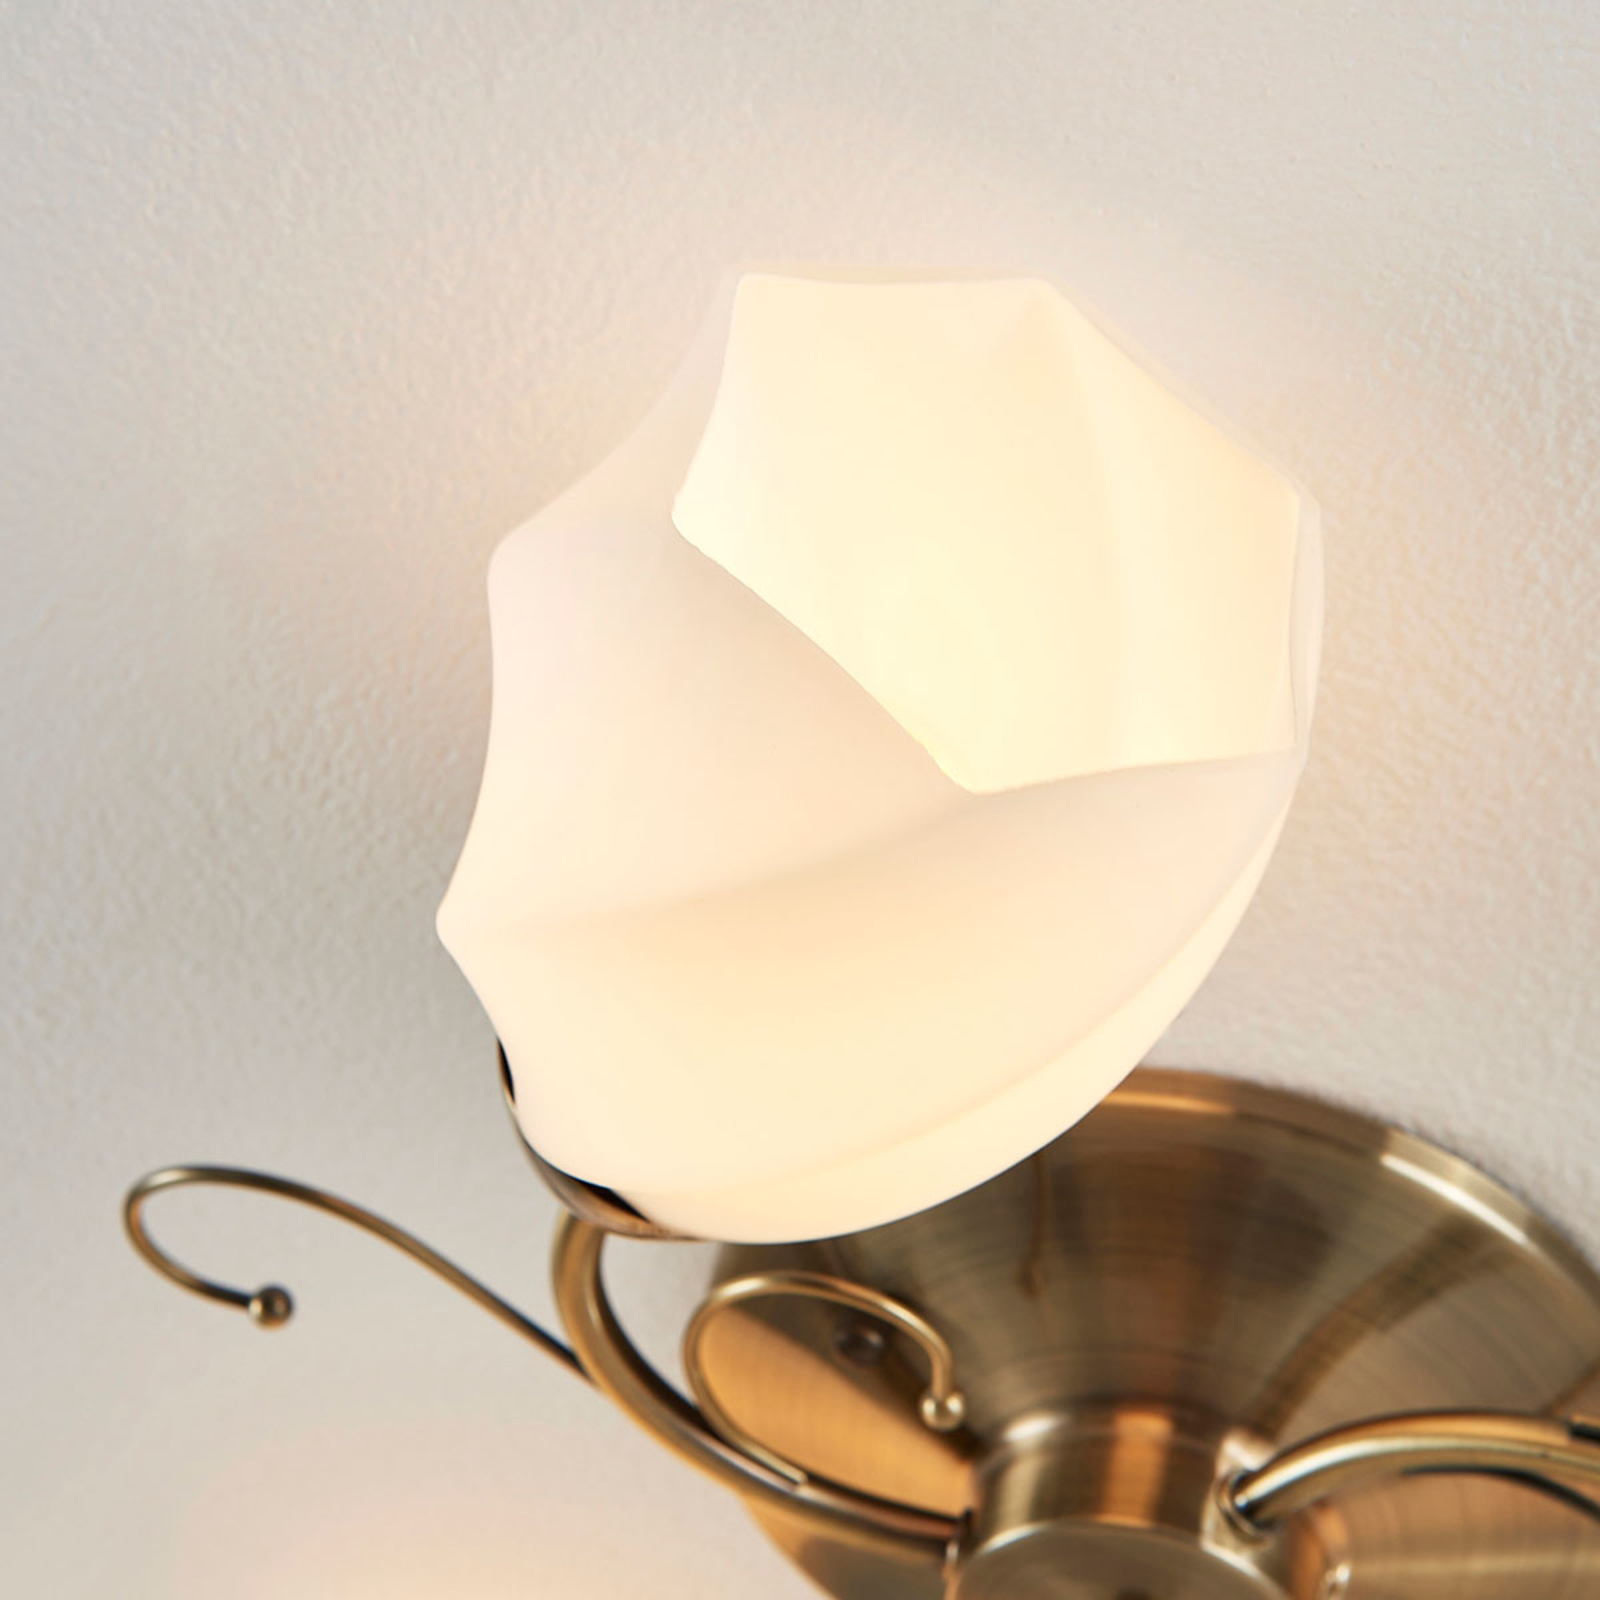 Stropní lampa Ameda s romantickým designem